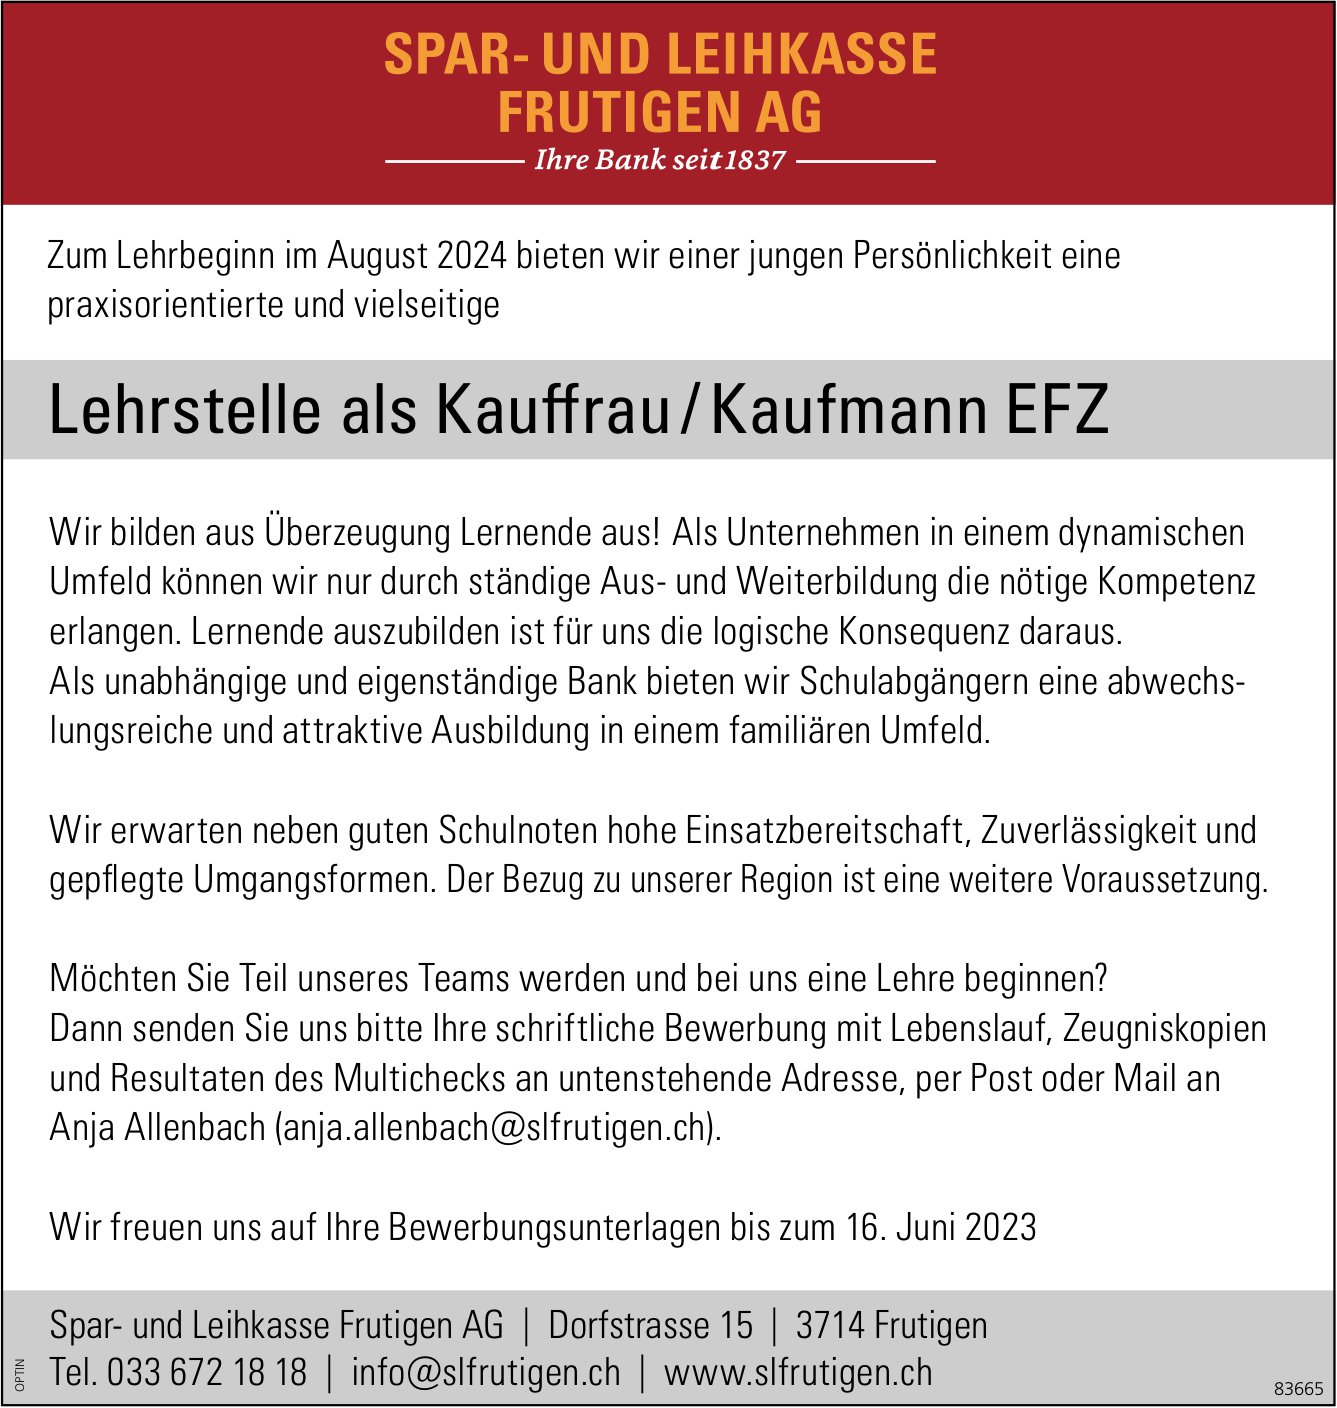 Lehrstelle als Kauffrau / Kaufmann EFZ, Spar- und Leihkasse Frutigen AG, Zu vergeben